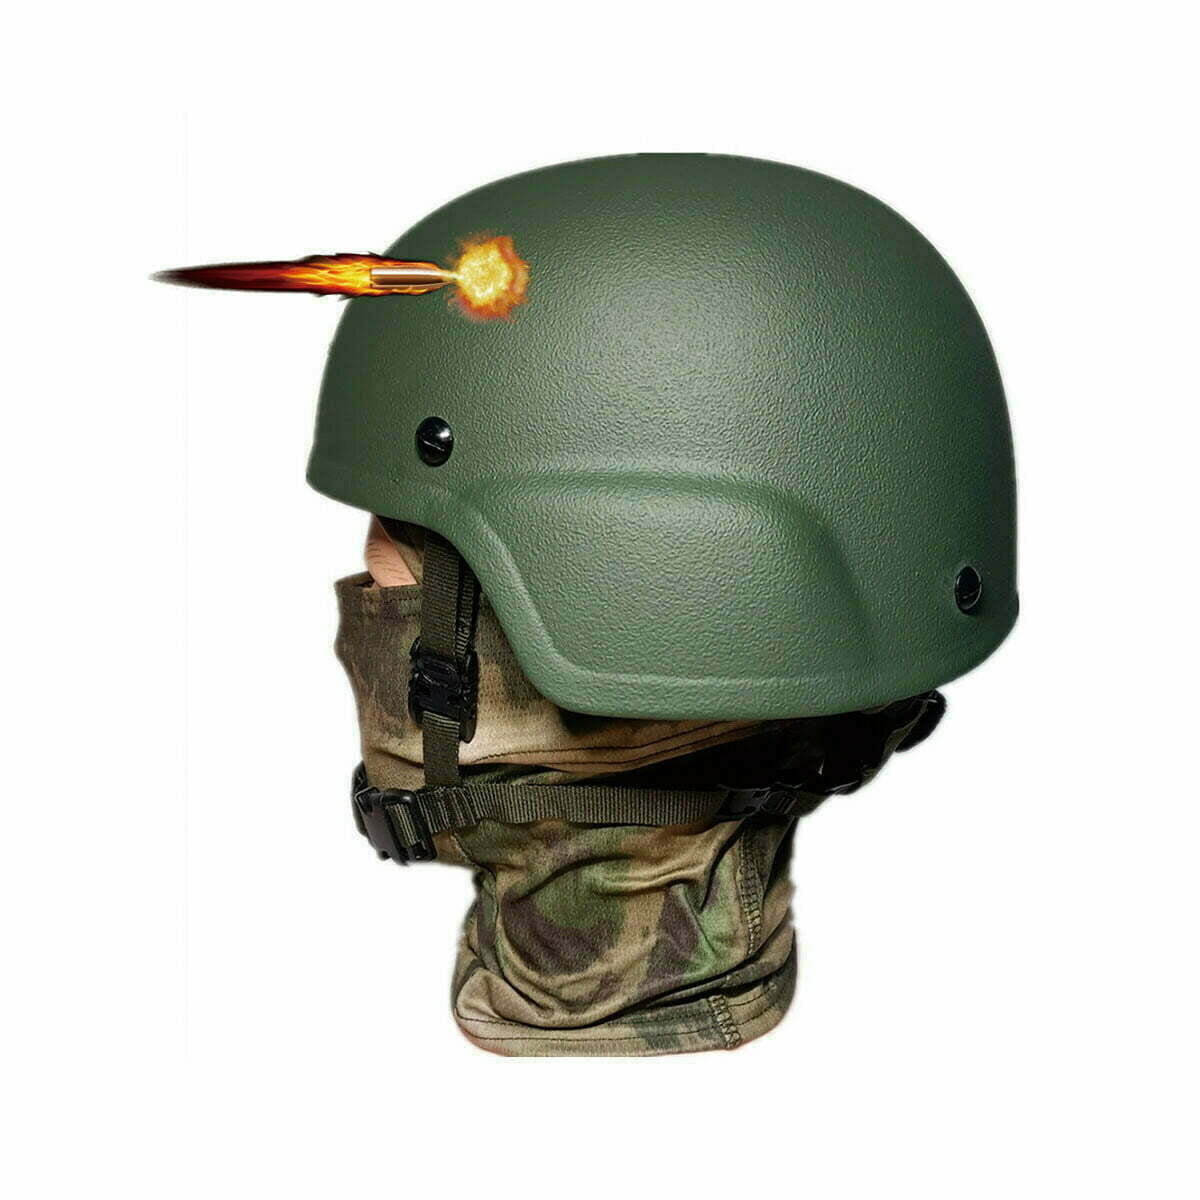 Casco militar, casco balístico táctico IIIA, casco de Kevlar polaco, verde  – Kask wojskowy balistyczny, hełm taktyczny kevlar